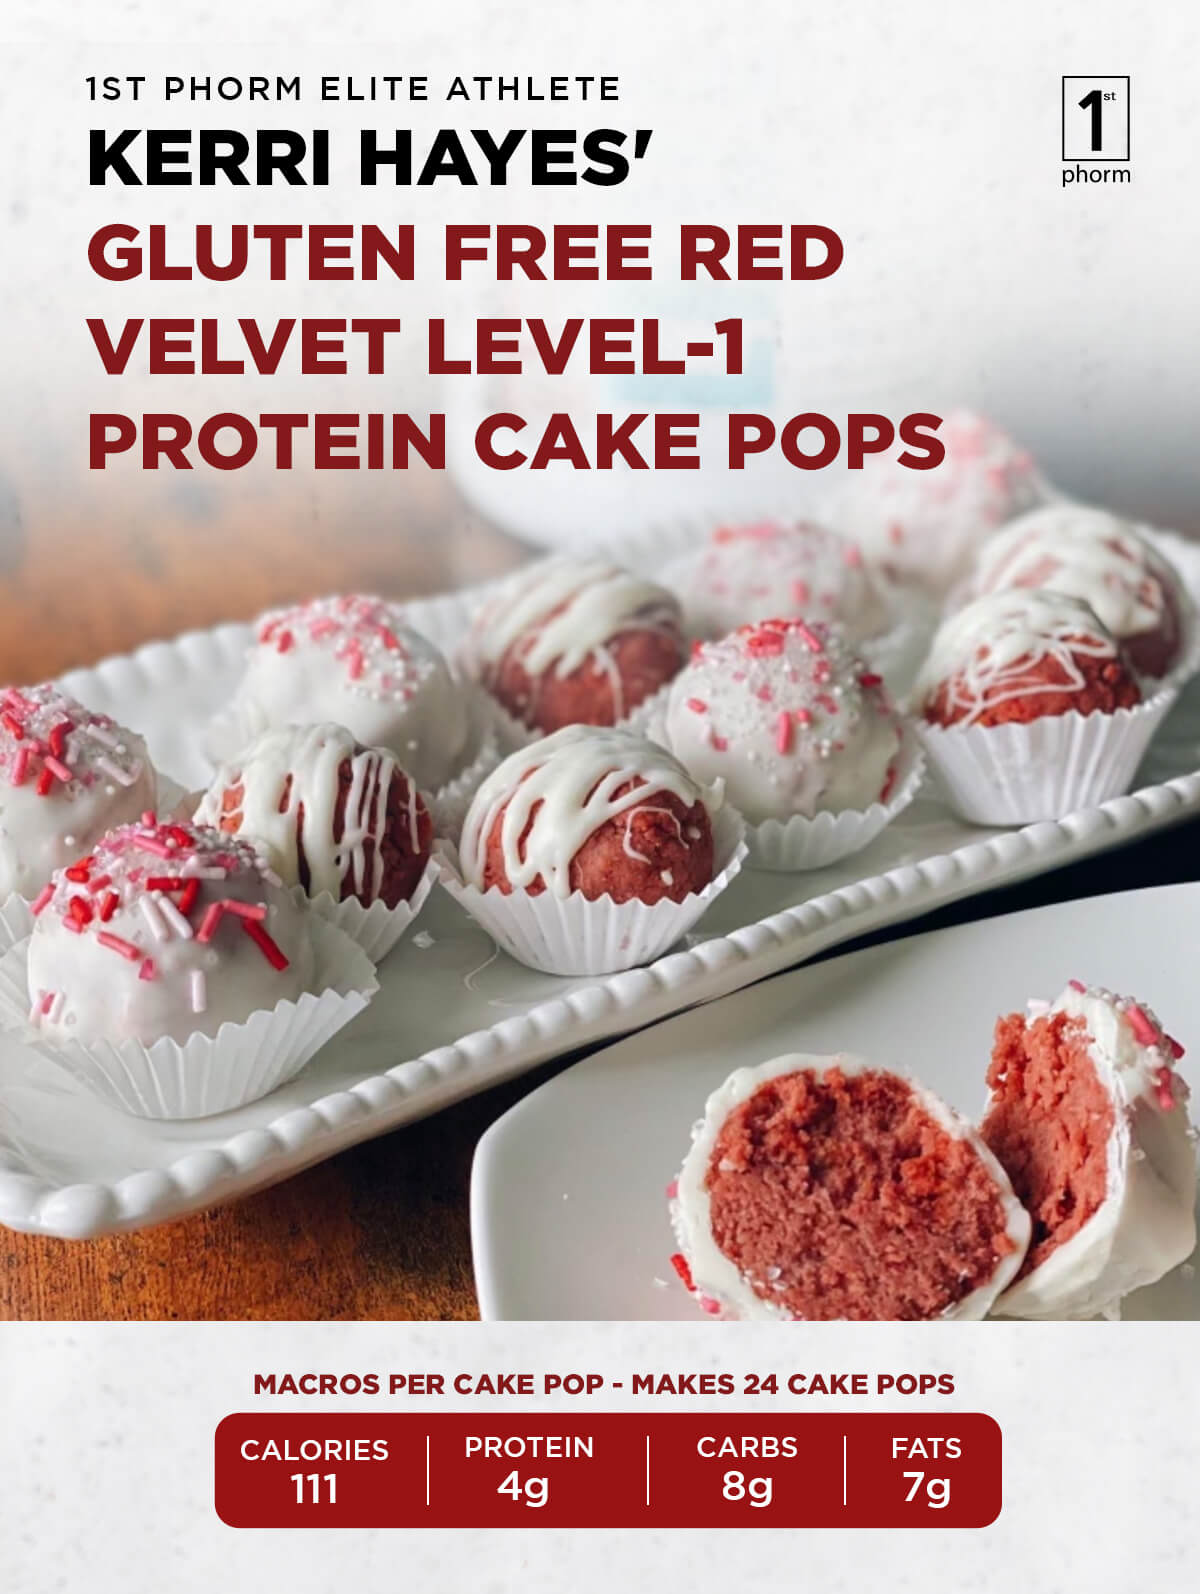 Gluten-Free Red Velvet Level-1 Protein Cake Pops